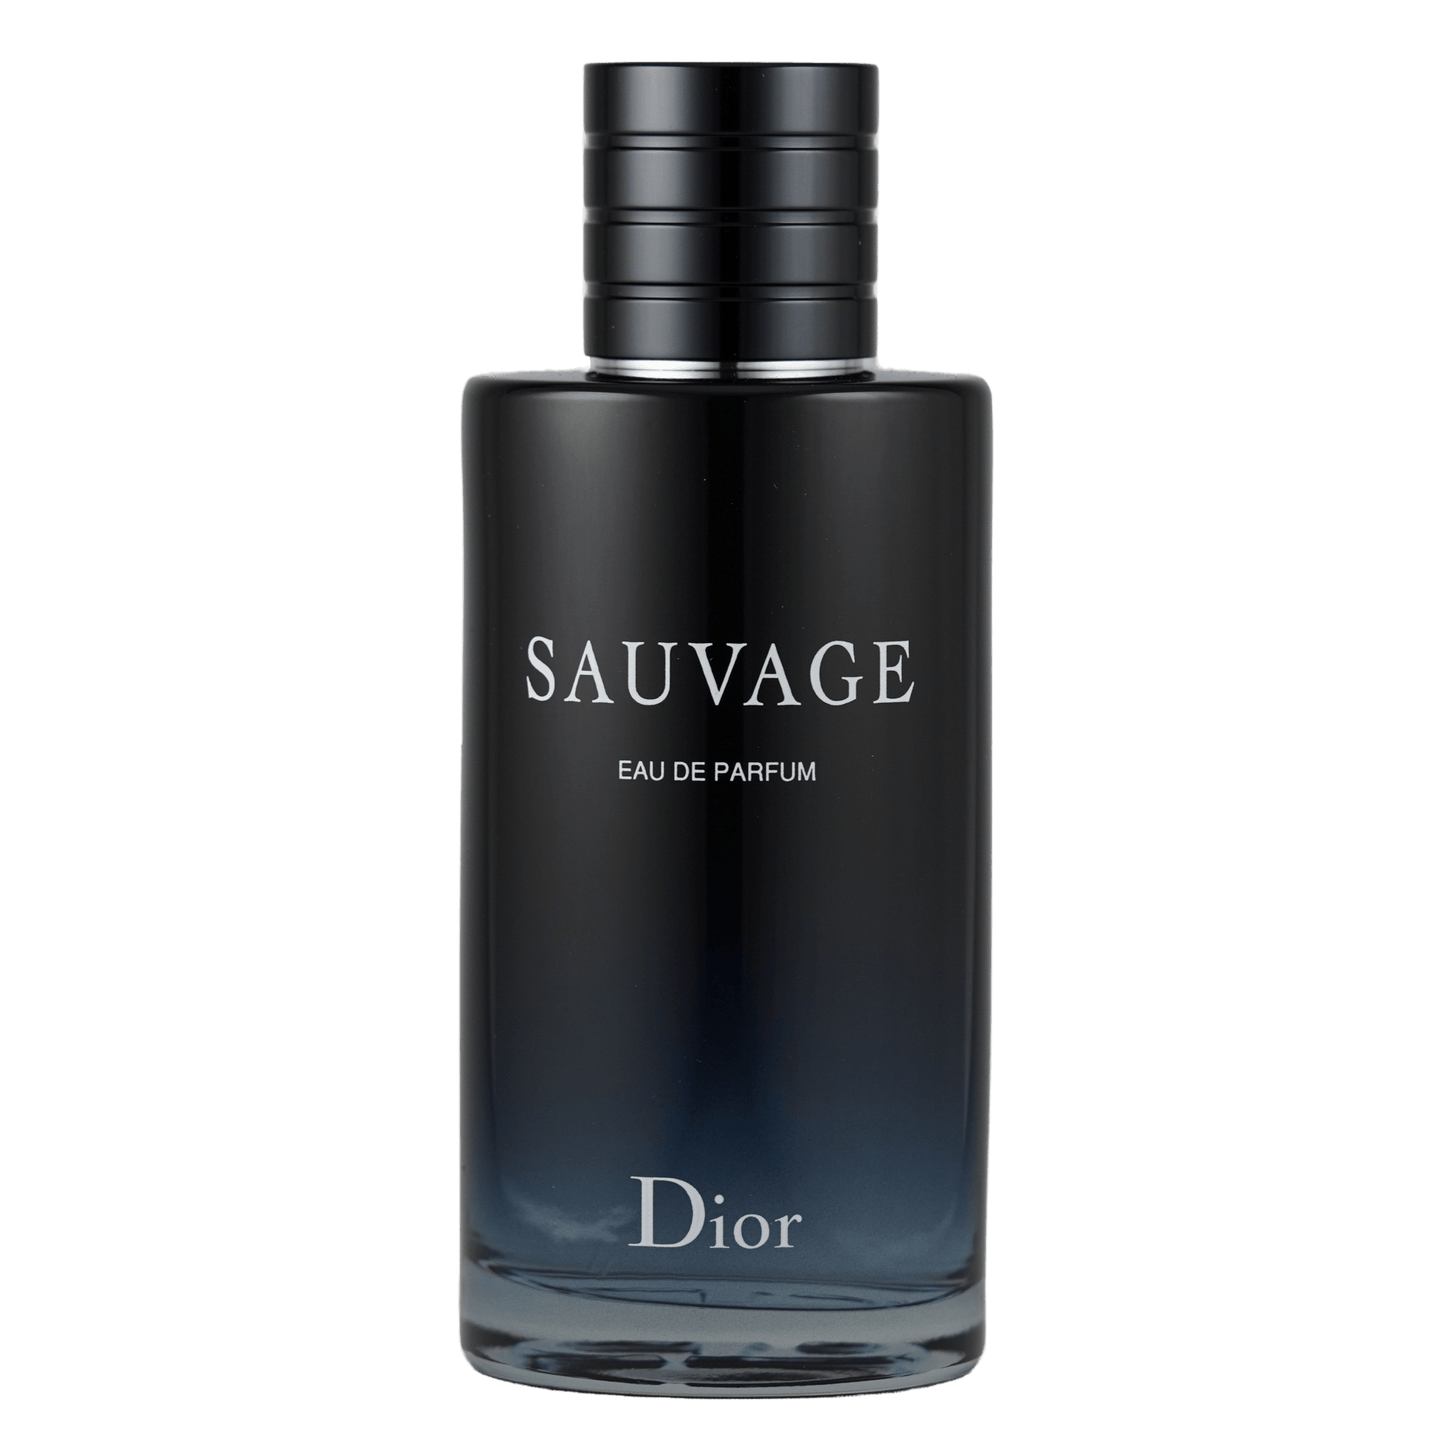 Ein Bild des Parfüms Sauvage von Dior Eau de Parfum angeboten als Duftprobe.